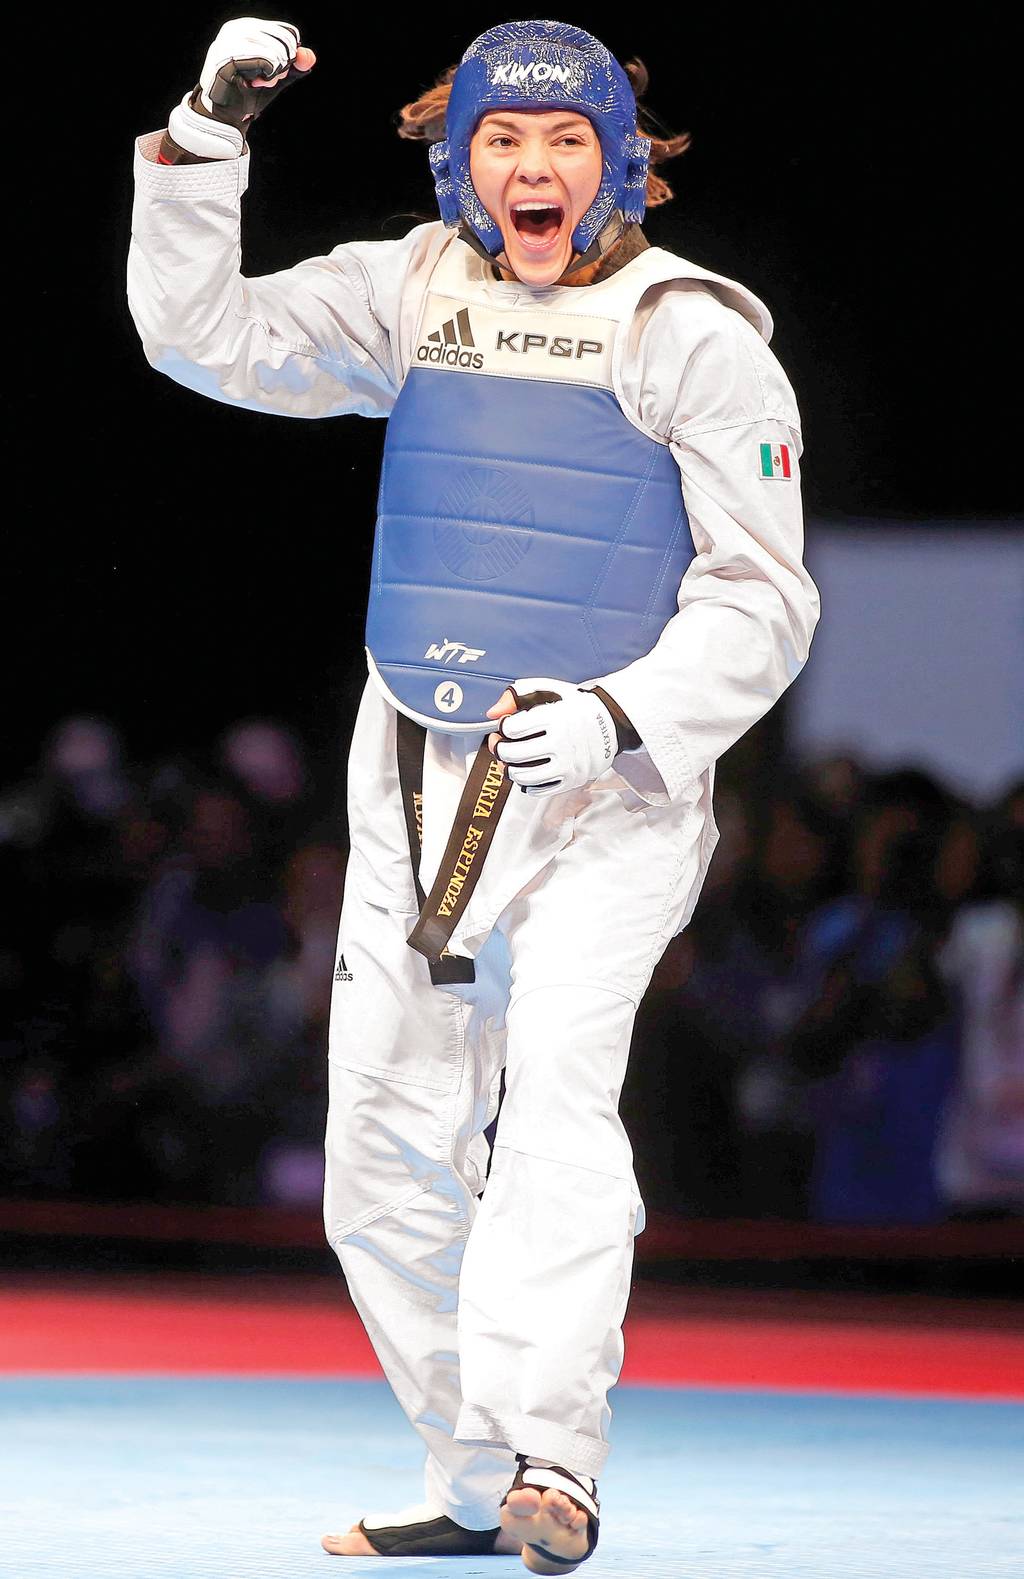 La mexicana María del Rosario Espinoza es la número uno de su categoría y es de las últimas esperanzas de medalla para México. María Espinoza va por su tercera medalla olímpica